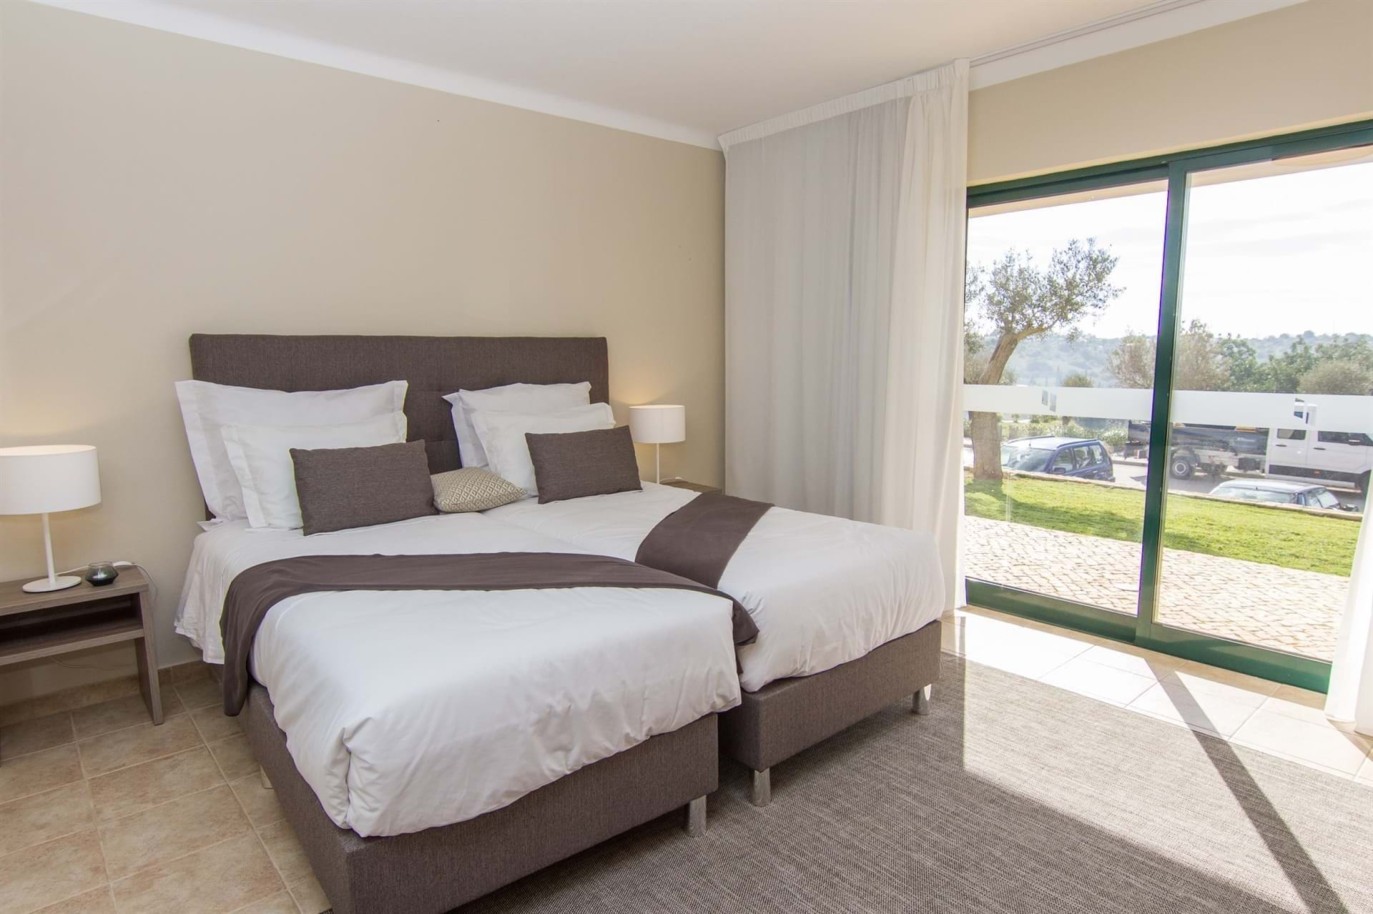 Venta de apartamento nuevo en el Carvoeiro, Algarve, Portugal_215635